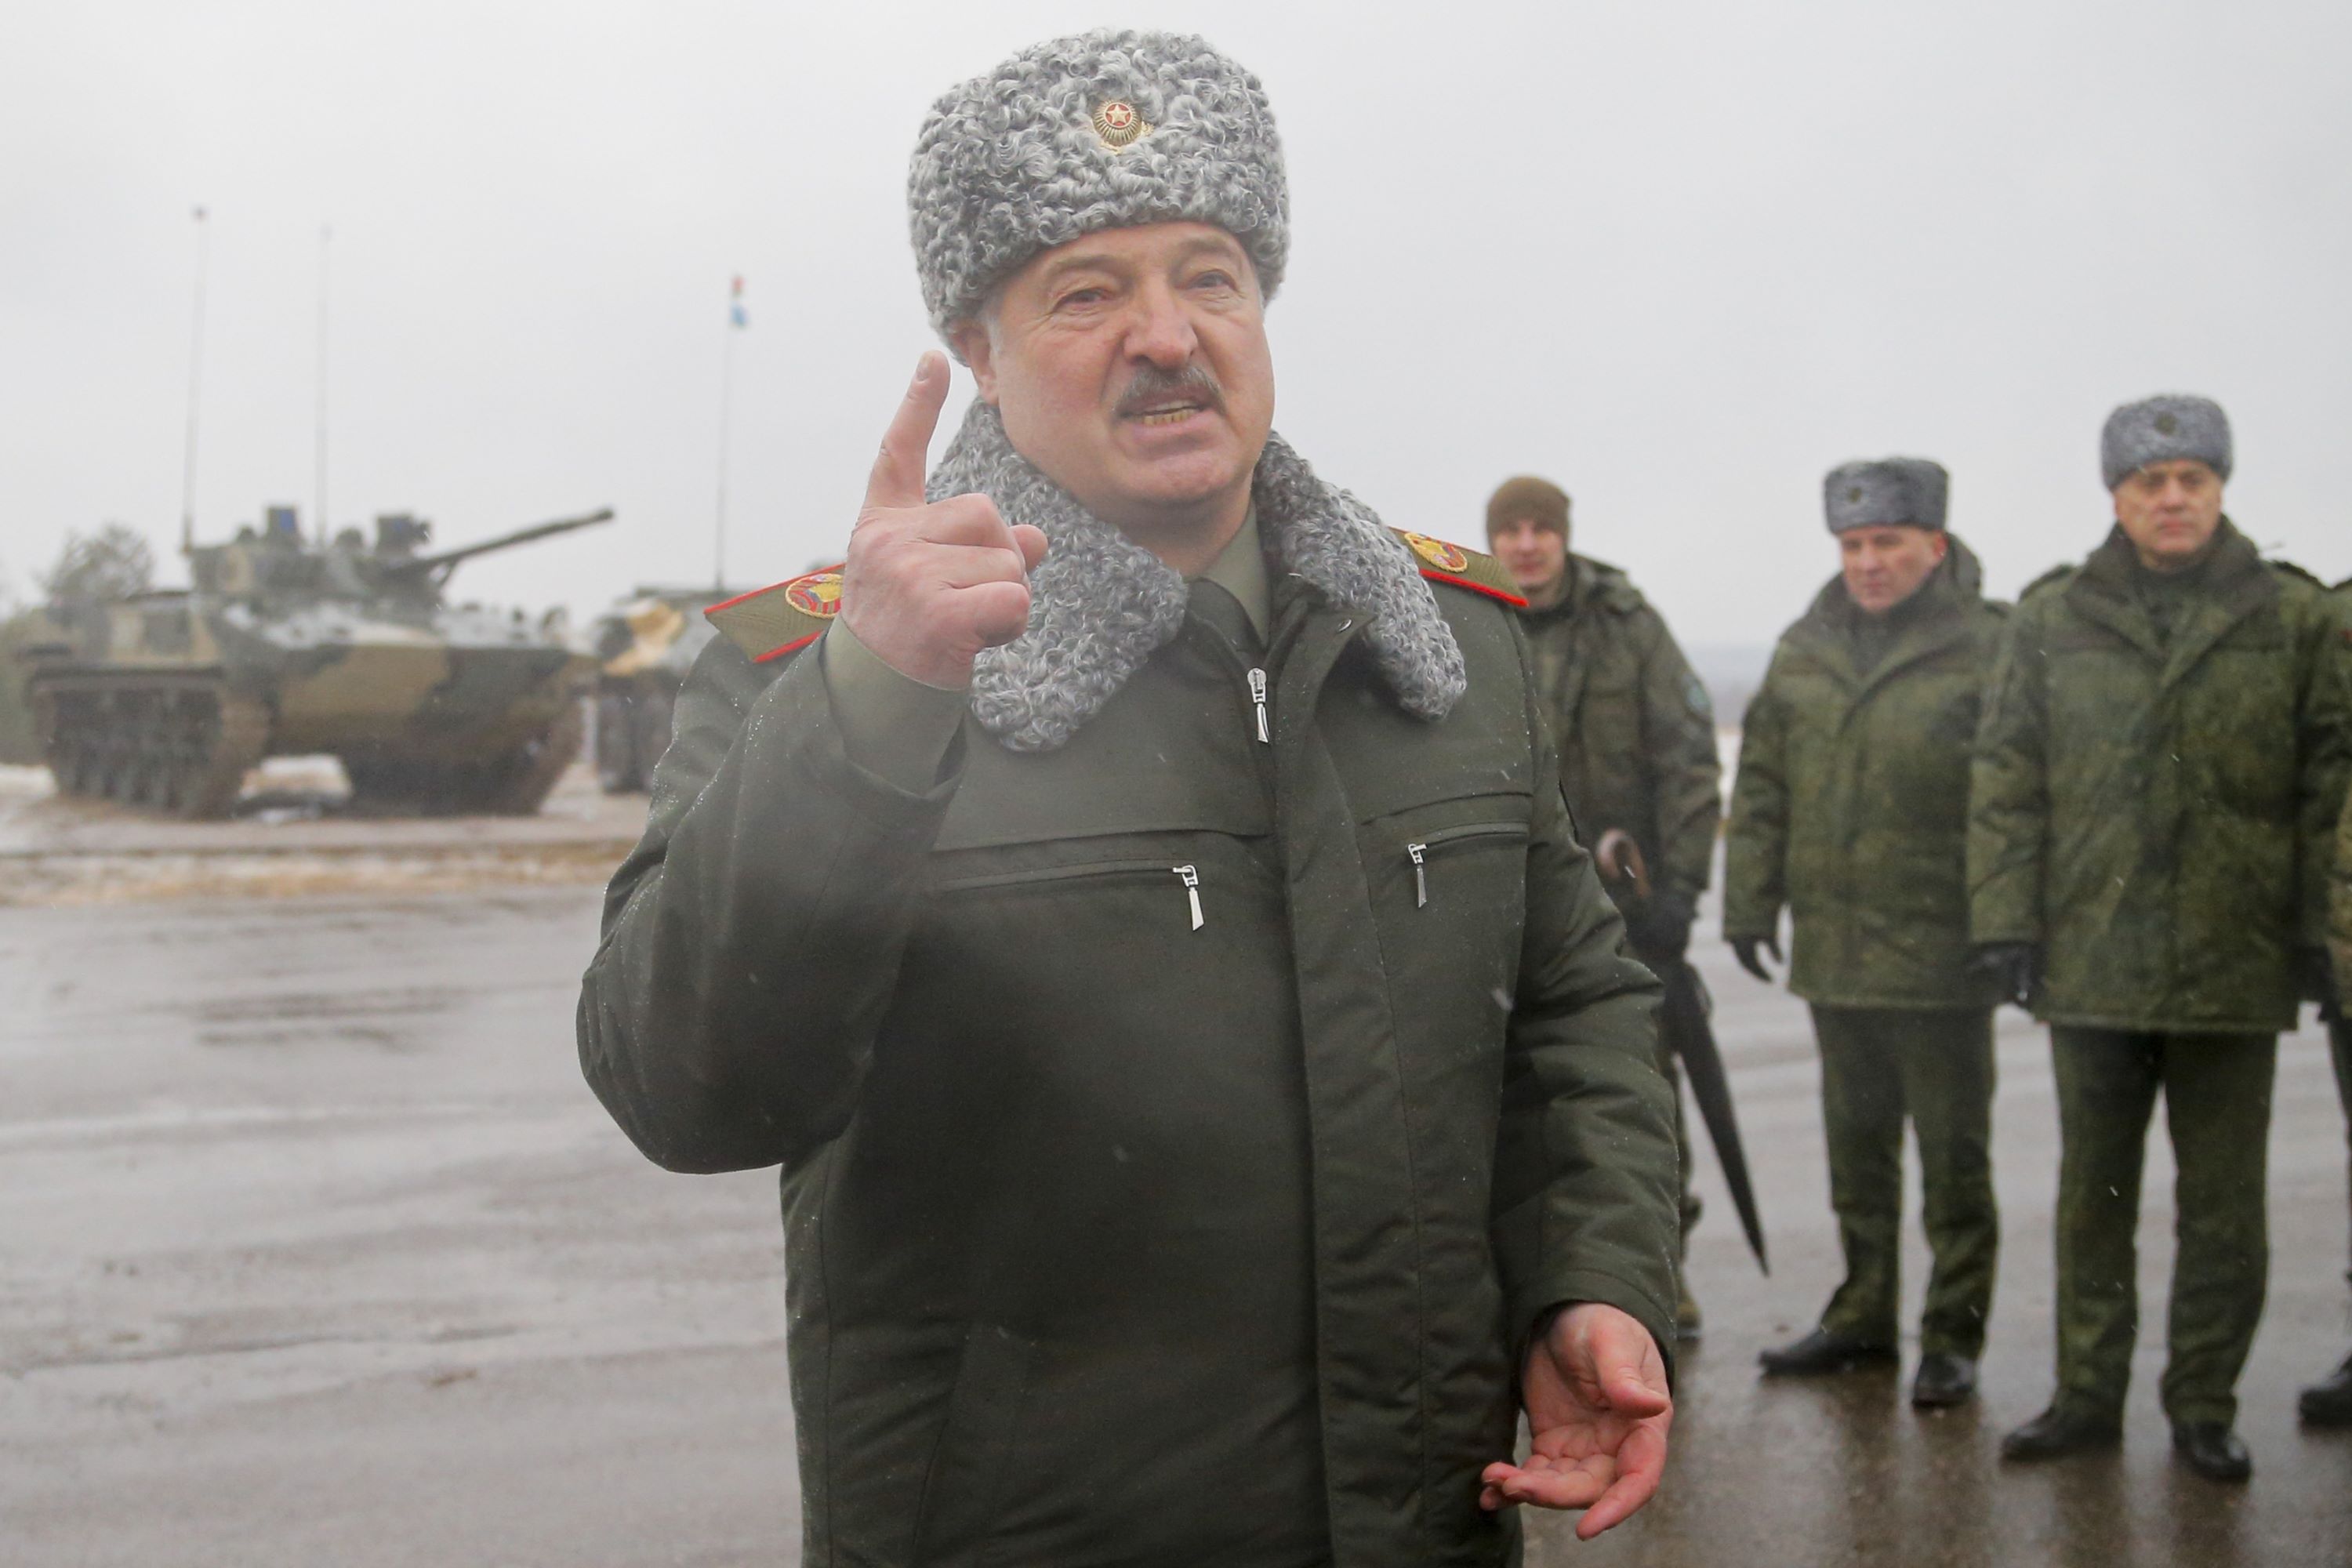 Mir odmah ili najstrašniji scenarij: Lukašenkova upozorenja do sad su ignorirana, iako je ispalo kako je i predviđao, a ako tako bude i s ovim zadnjim to bi moglo biti tragično po svijet